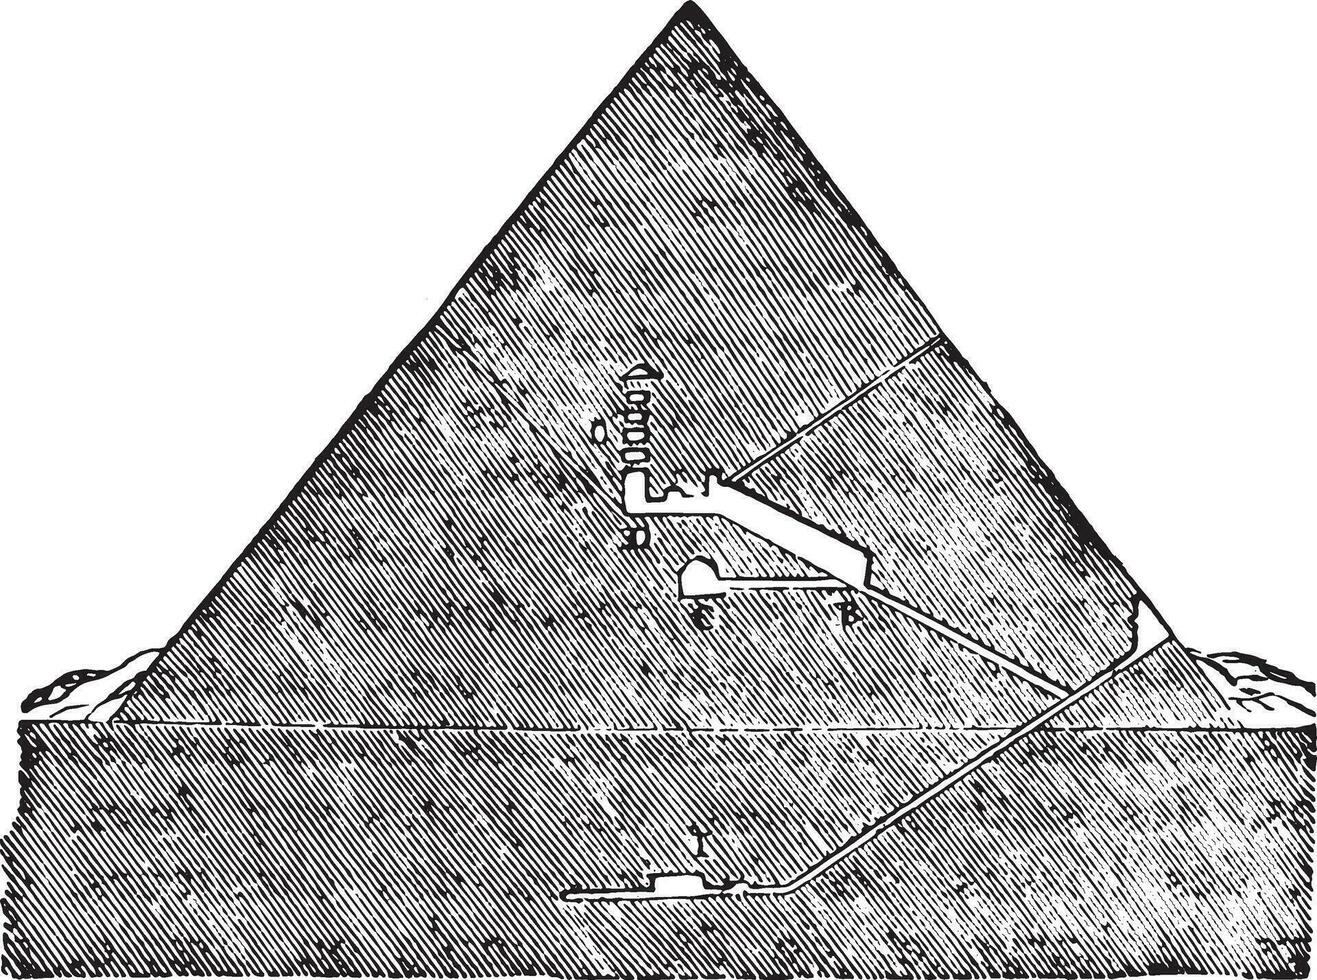 Coupe le génial pyramide de Memphis, ancien gravure. vecteur